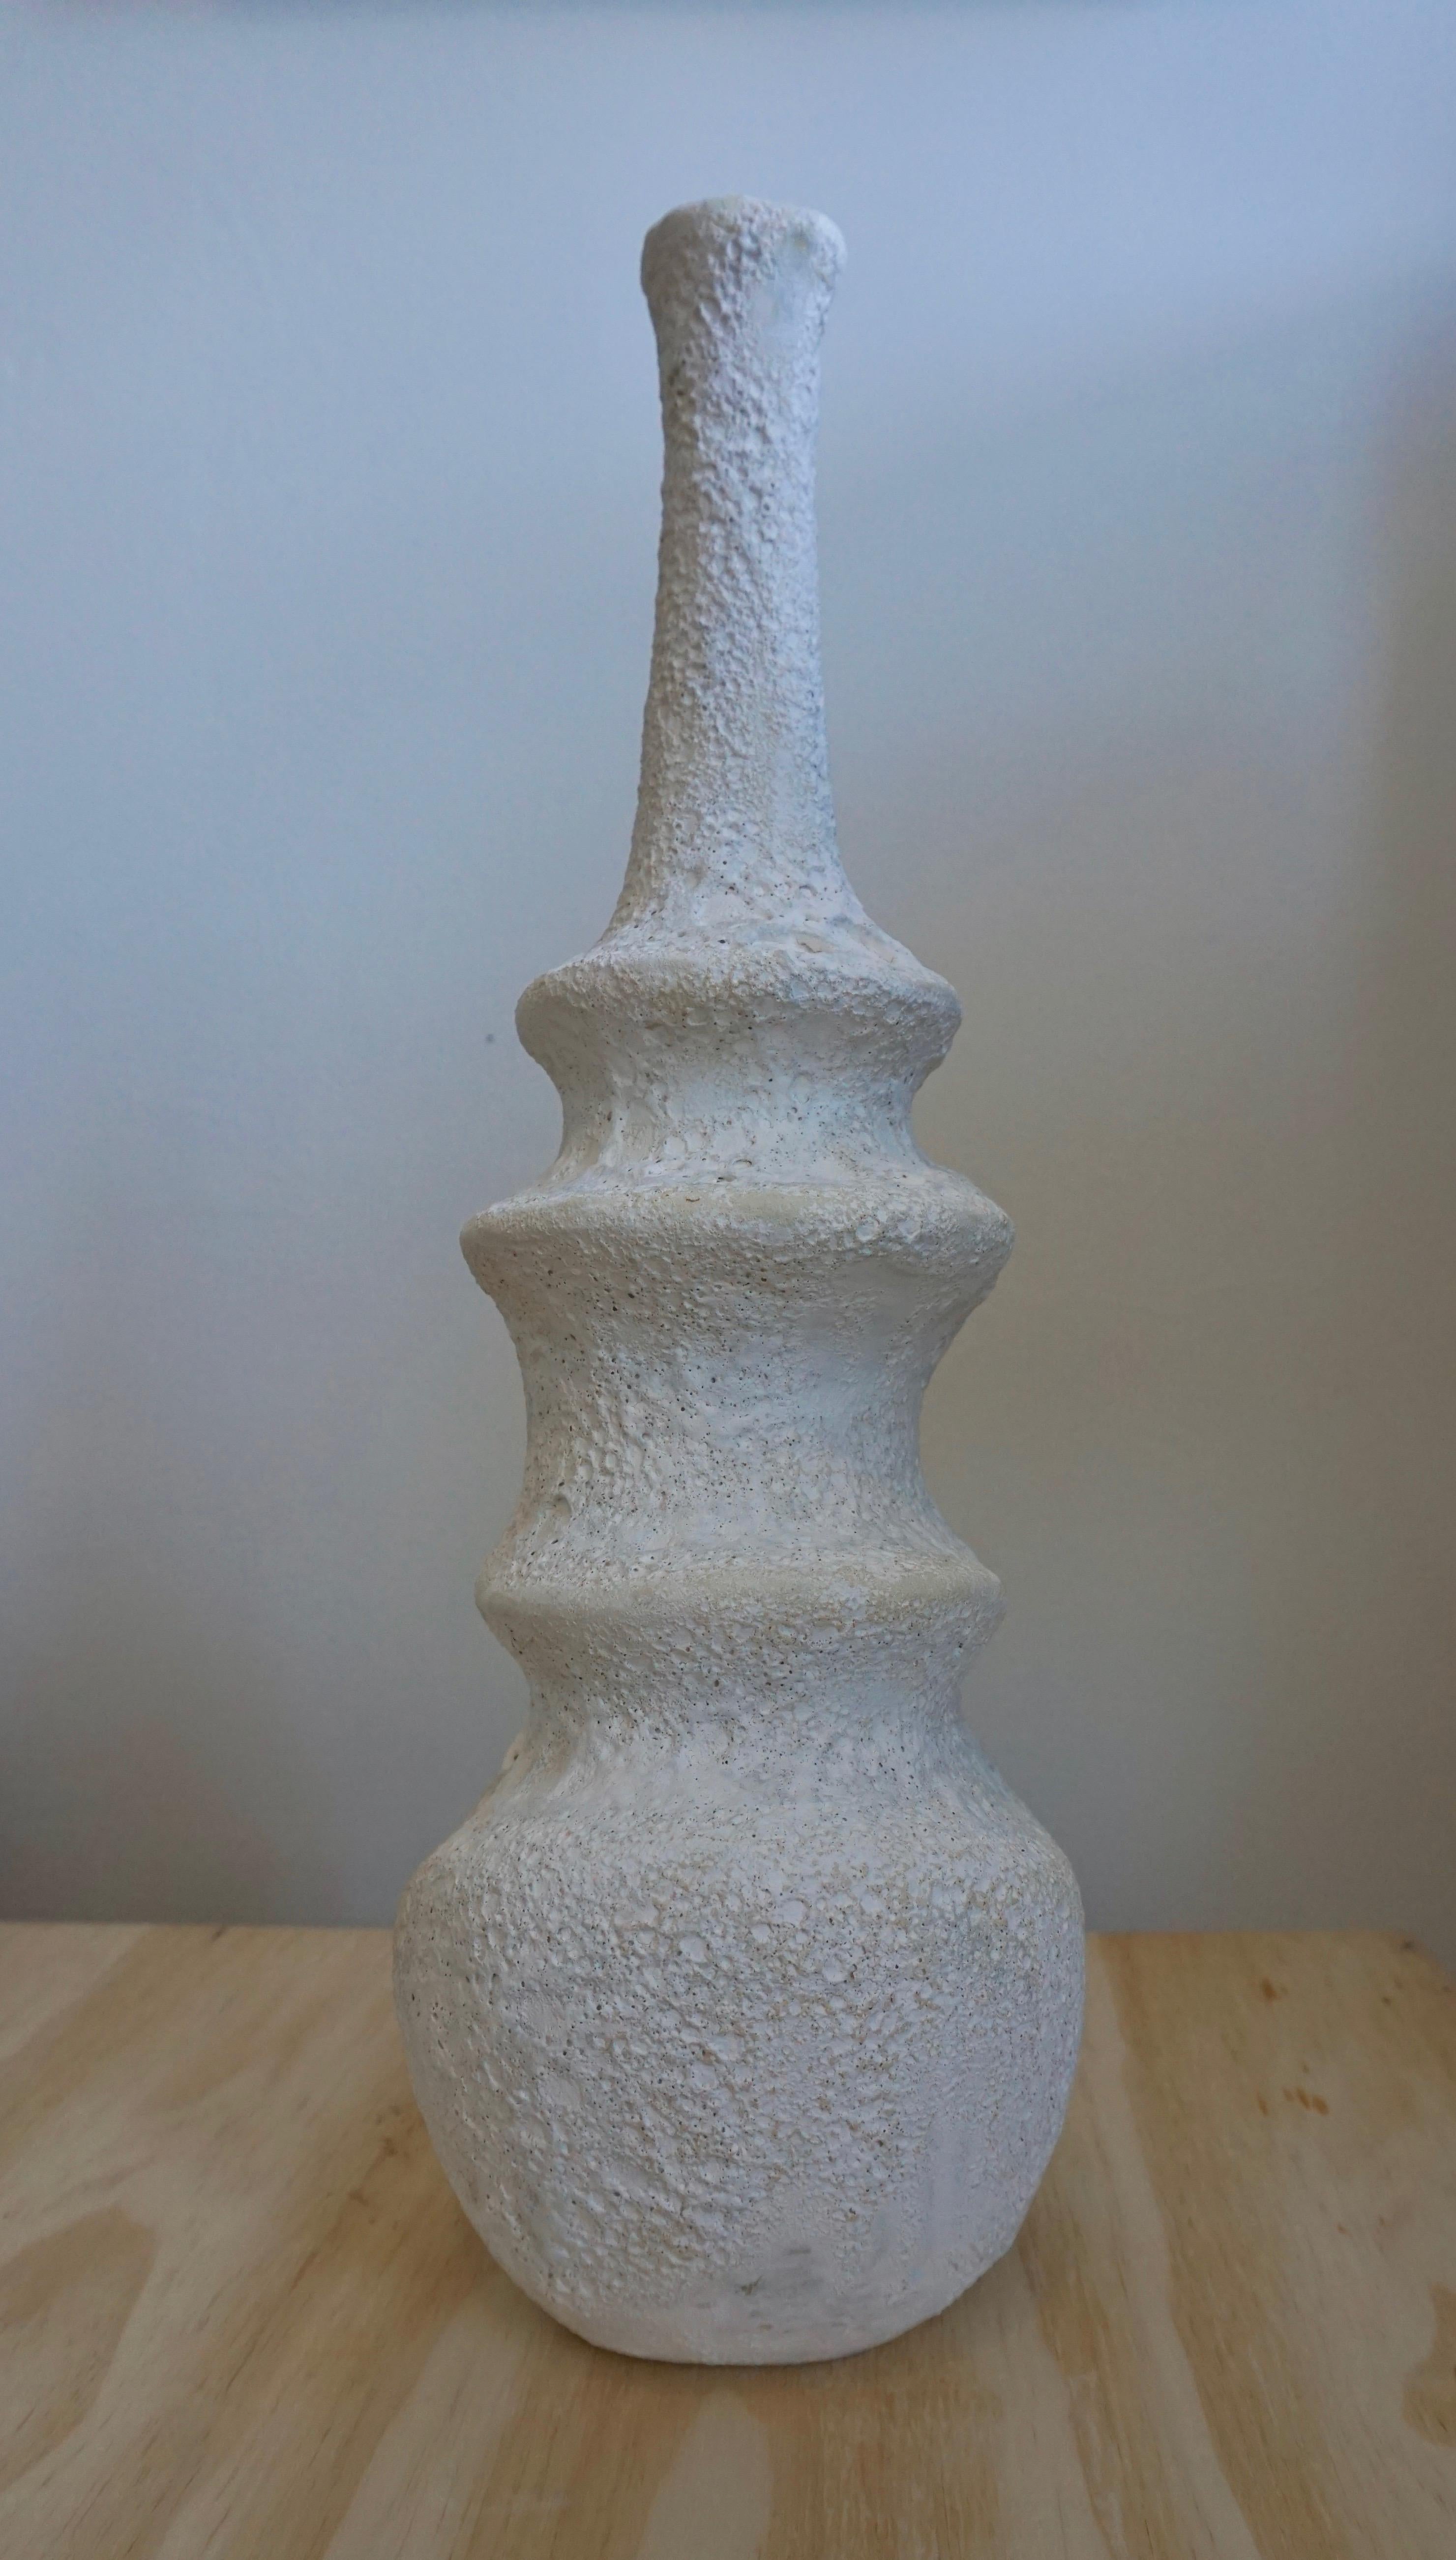 Crater-Vase II von Kate Butler
Abmessungen: 15,5 x 5,5 x 4,5 Zoll
MATERIALIEN: Handgeformte, glasierte Töpferware

Kate Butler ist Schriftstellerin und Künstlerin und arbeitet hauptsächlich mit Zeichnungen und Keramik. Ihre Skulpturen beschreiben